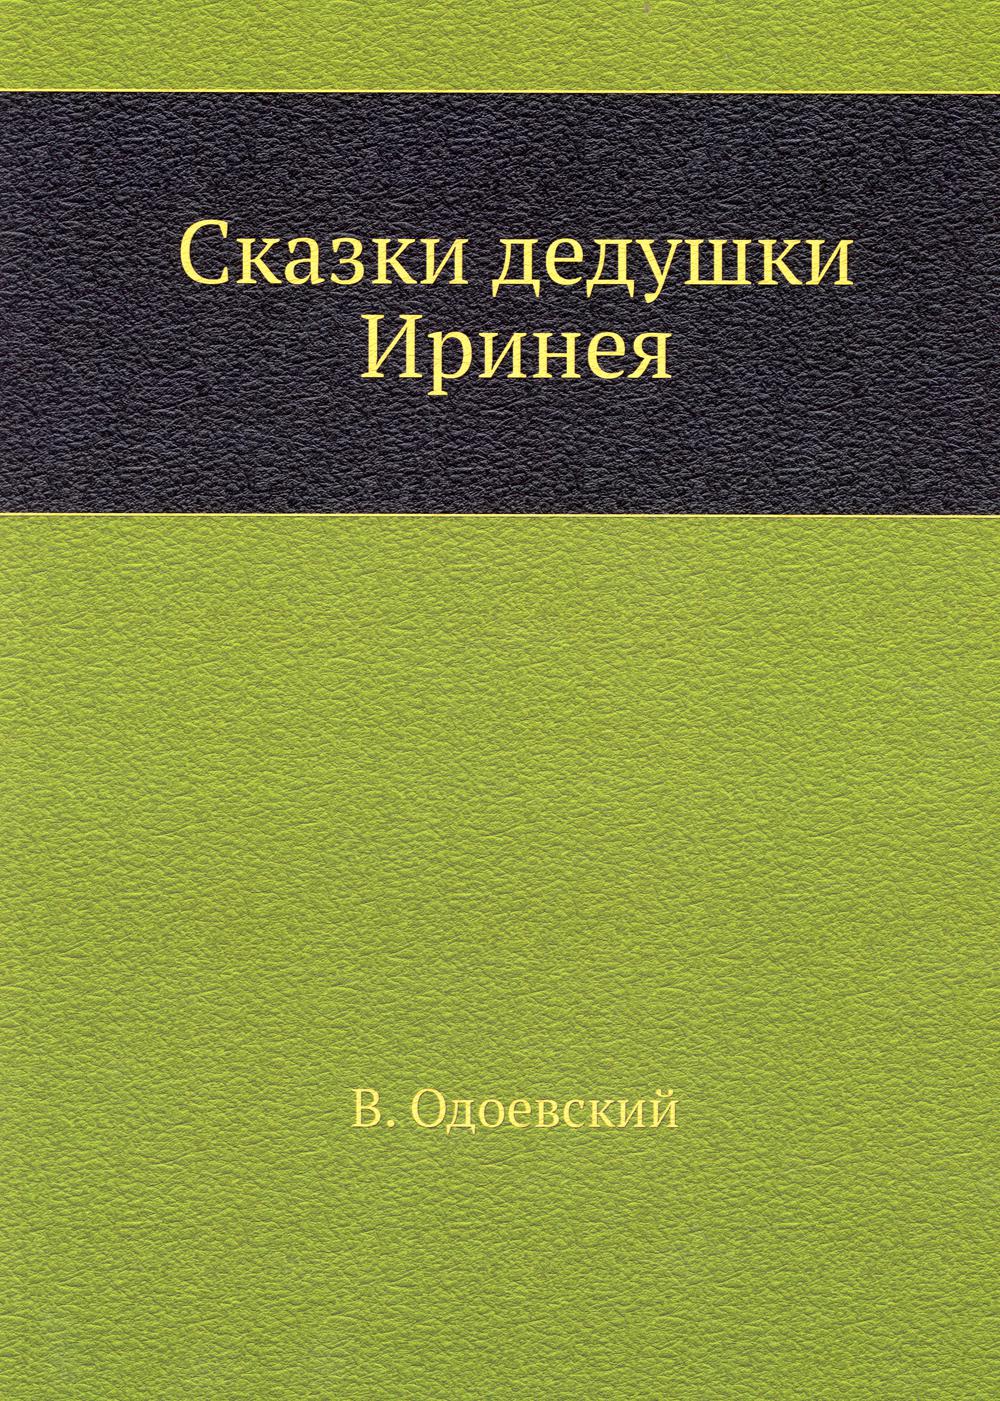 Сказки дедушки Иринея (репринтное изд.)